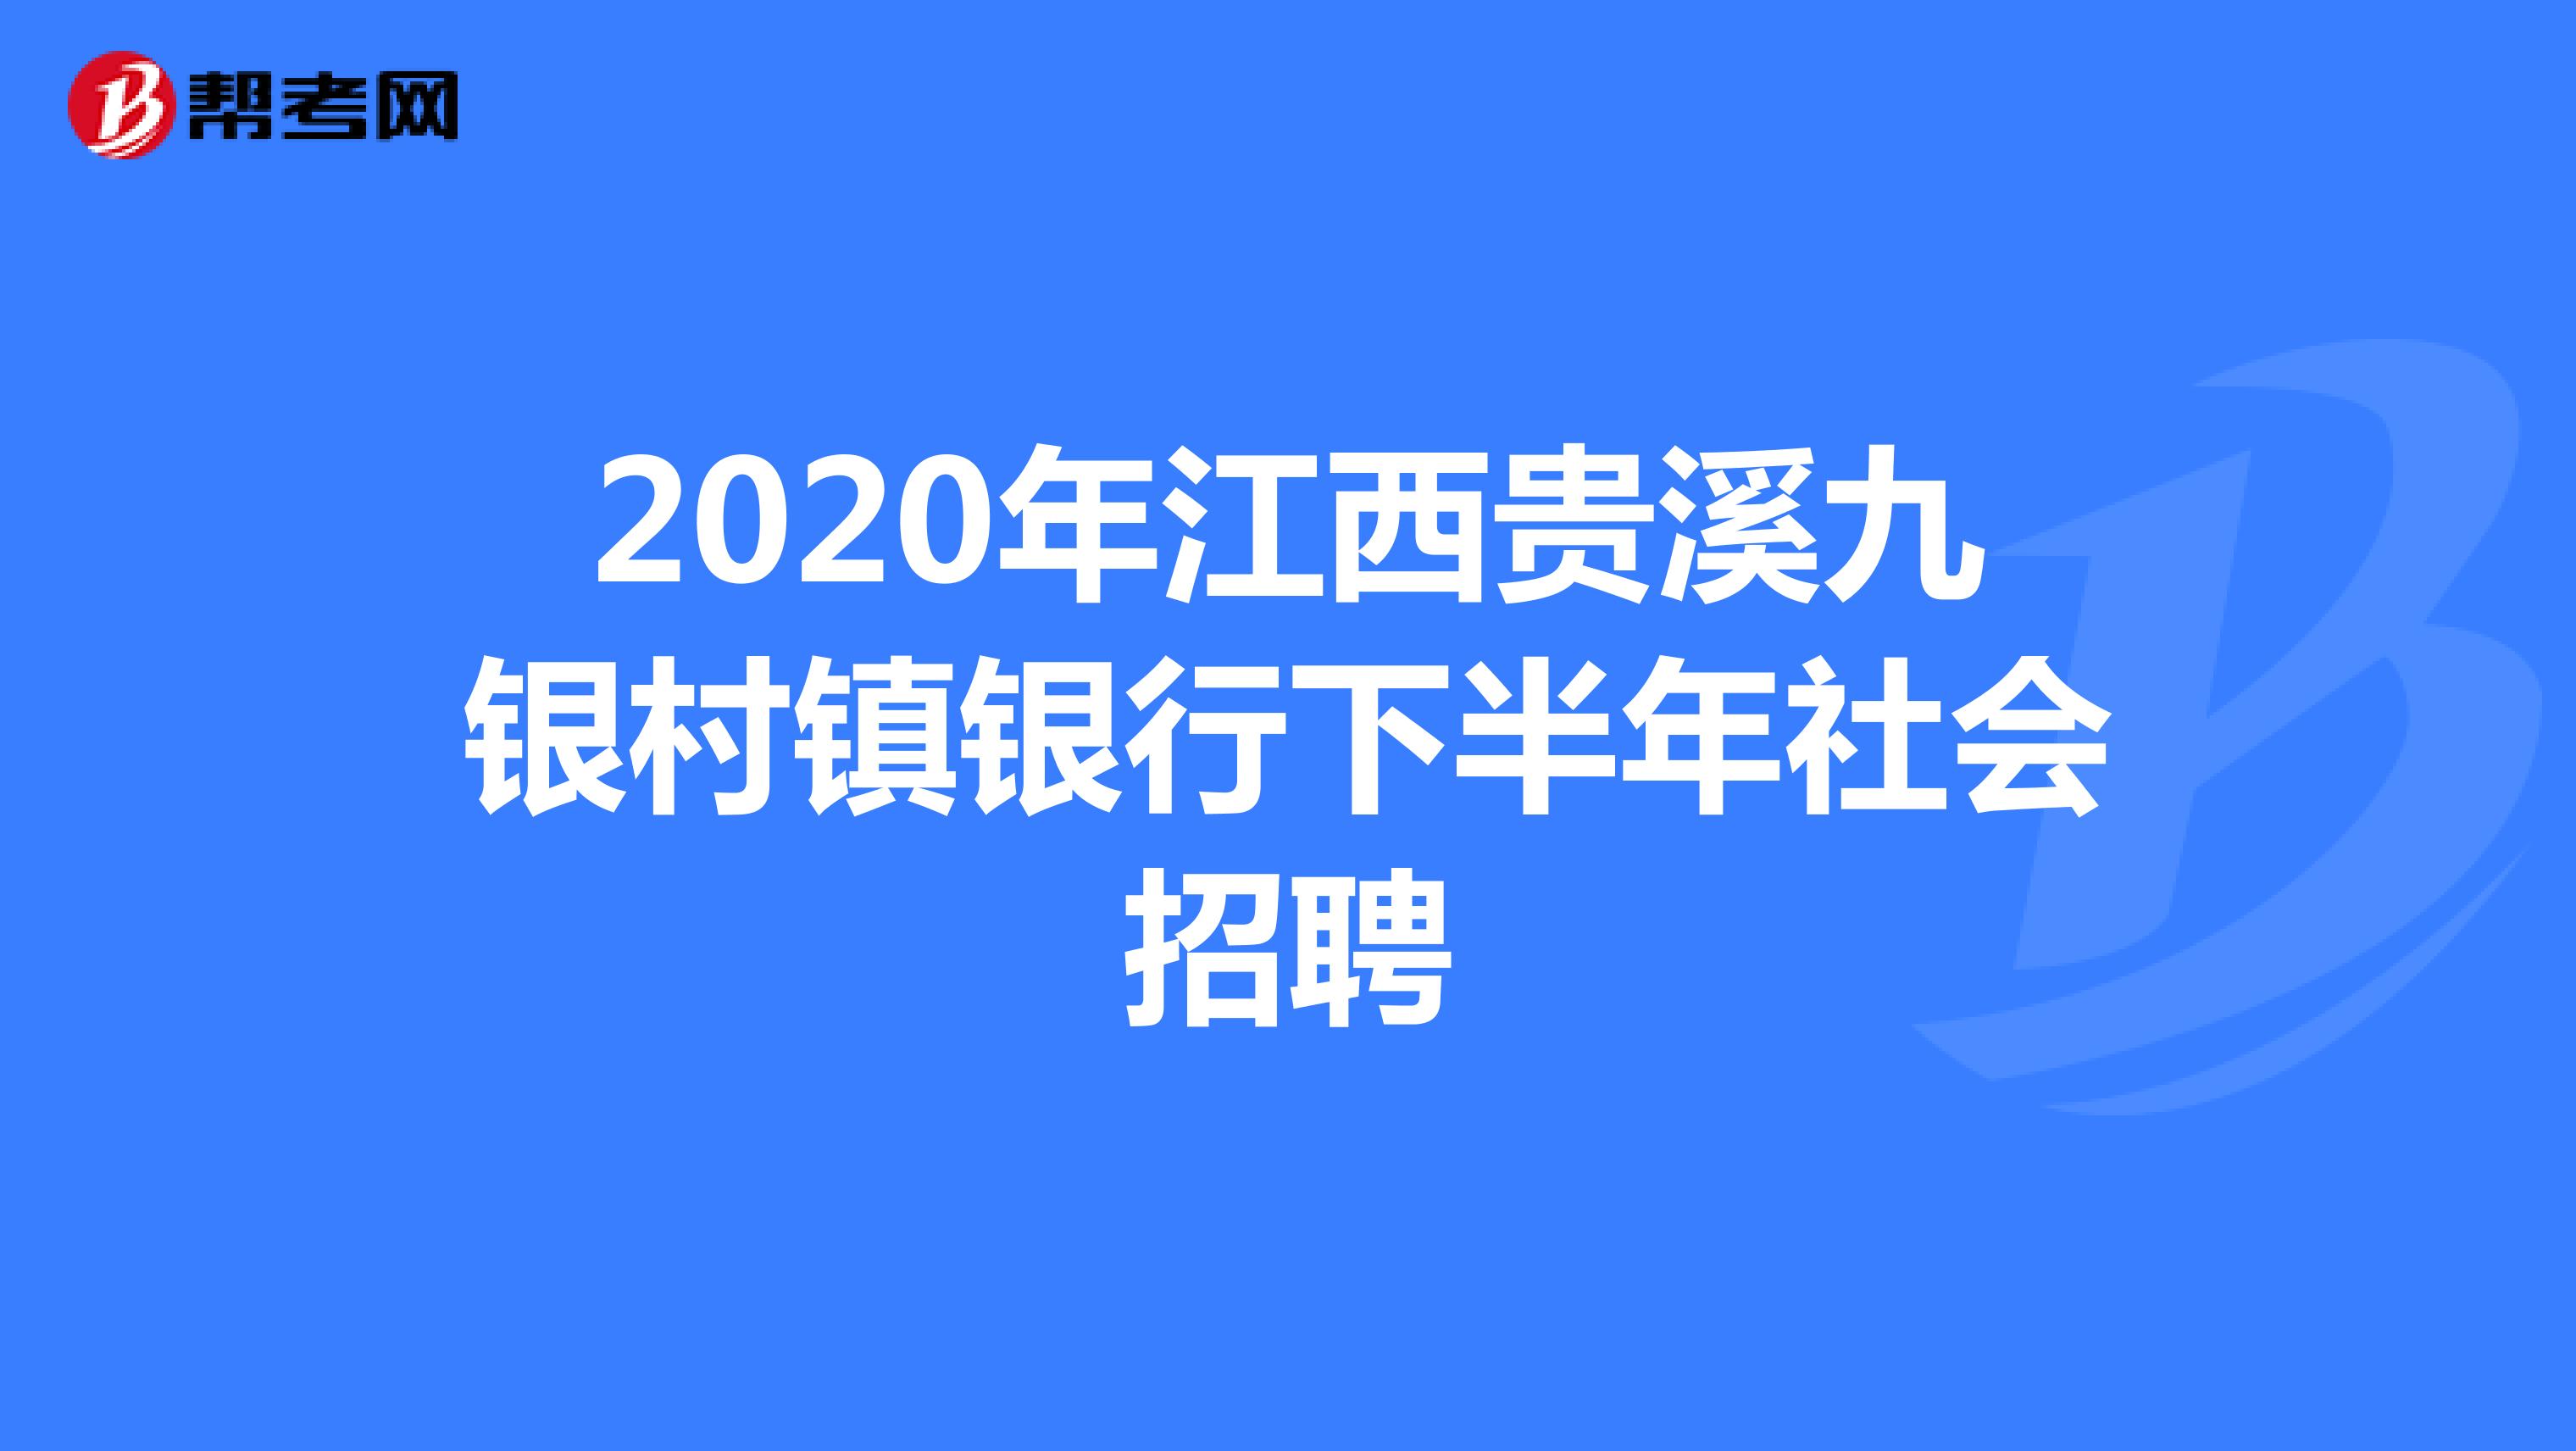 2020年江西贵溪九银村镇银行下半年社会招聘